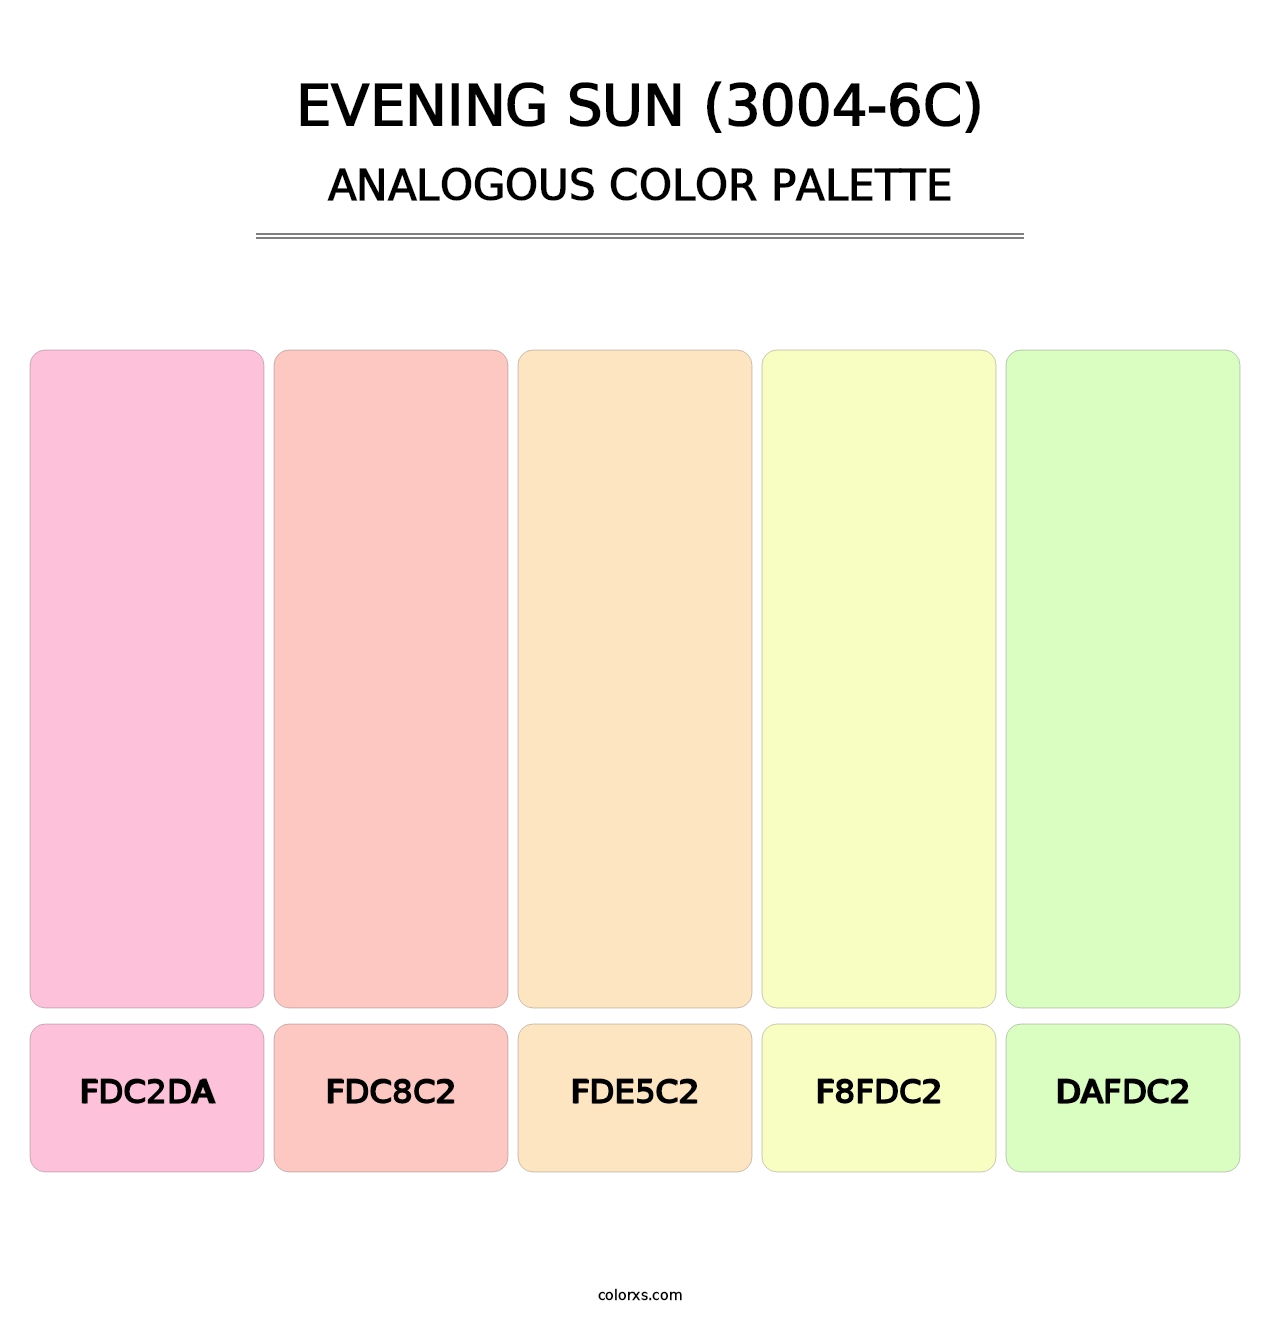 Evening Sun (3004-6C) - Analogous Color Palette